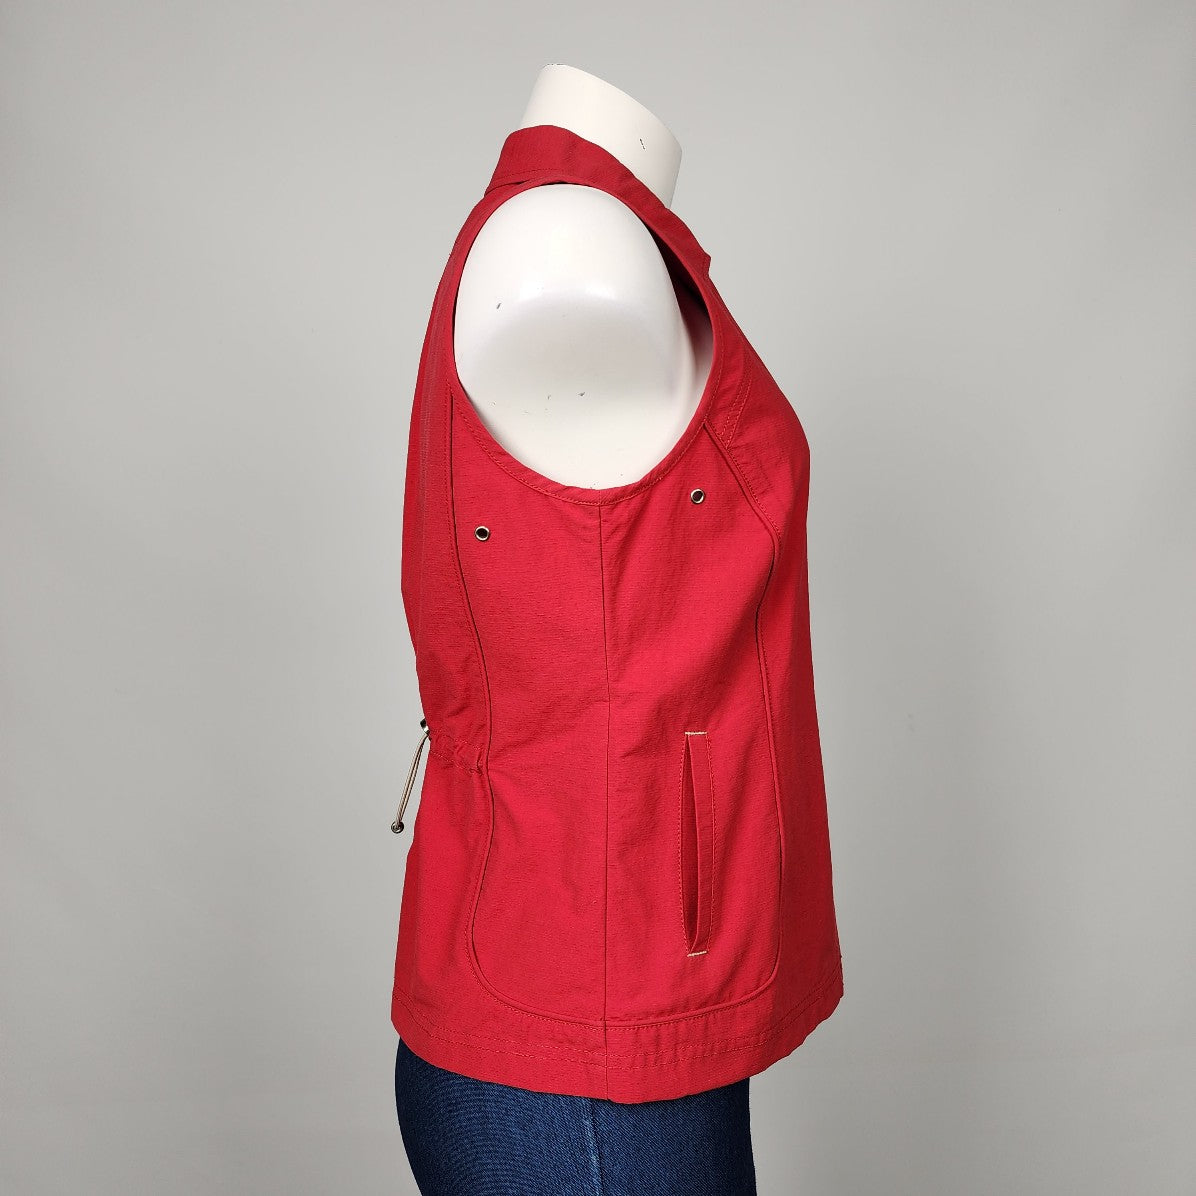 Eric Alexandre Red Cotton Blend Zip Up Vest Size S/M